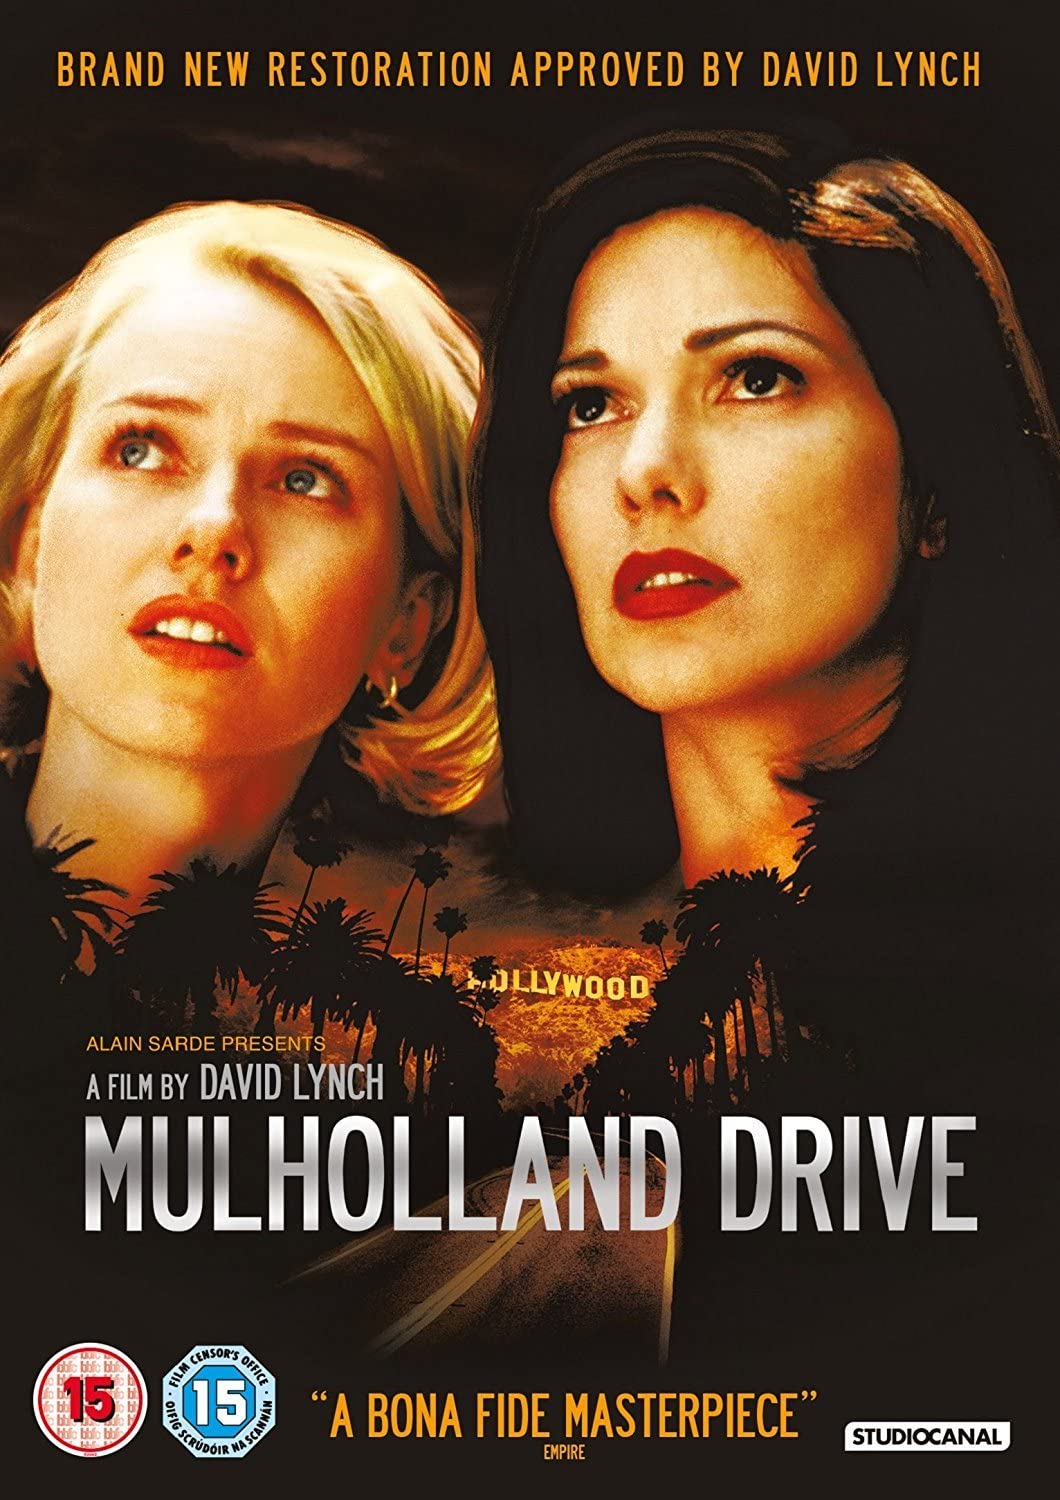 Mulholland Drive Tally (Restauriert) [1999] – Mystery/Thriller [DVD]